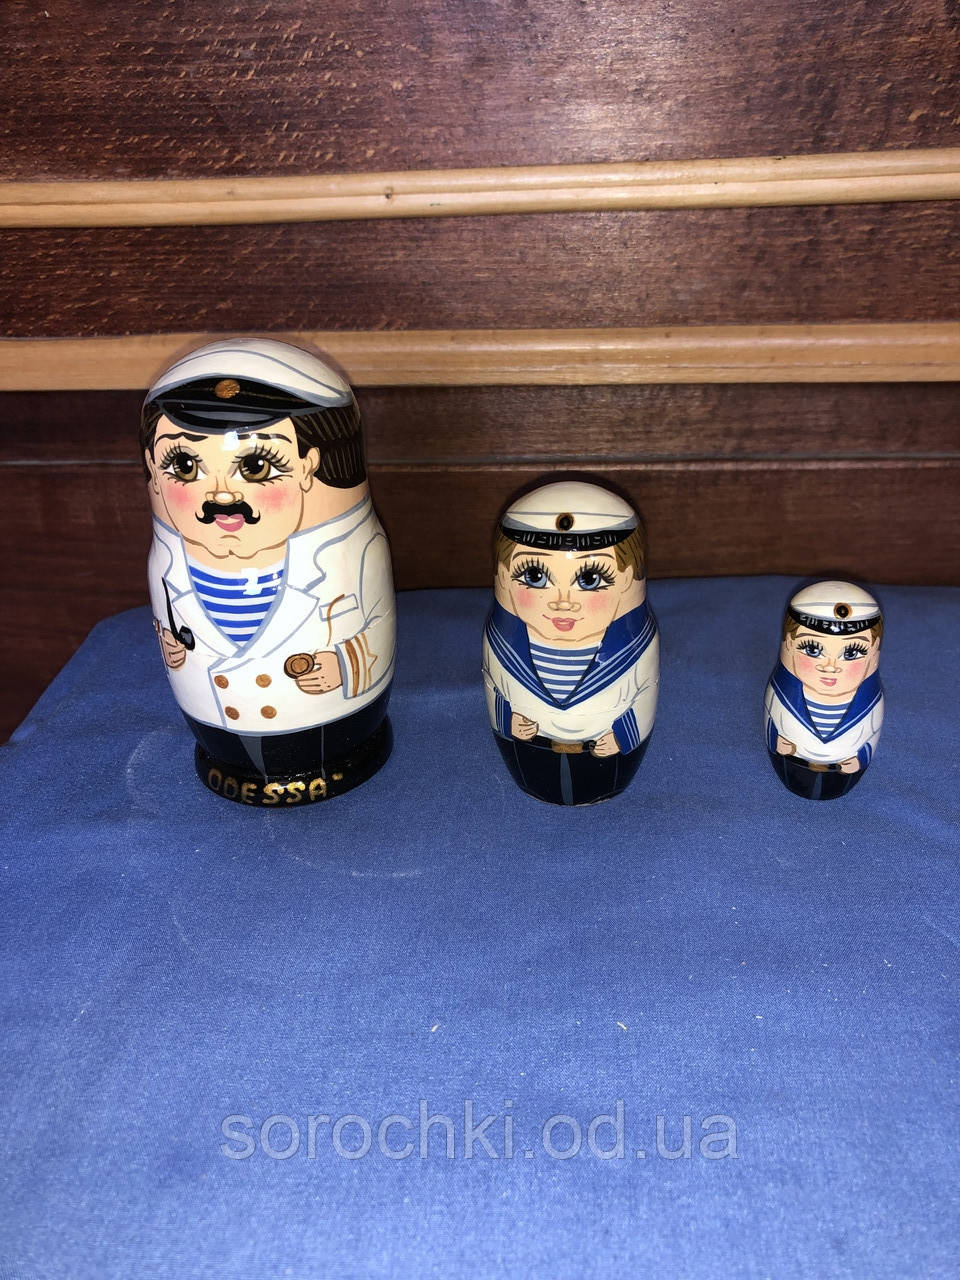 Сувенир Матрешка, одеські персонажі, "моряк Костя", капітан, трійка, ручна робота, береза, висота 10 см